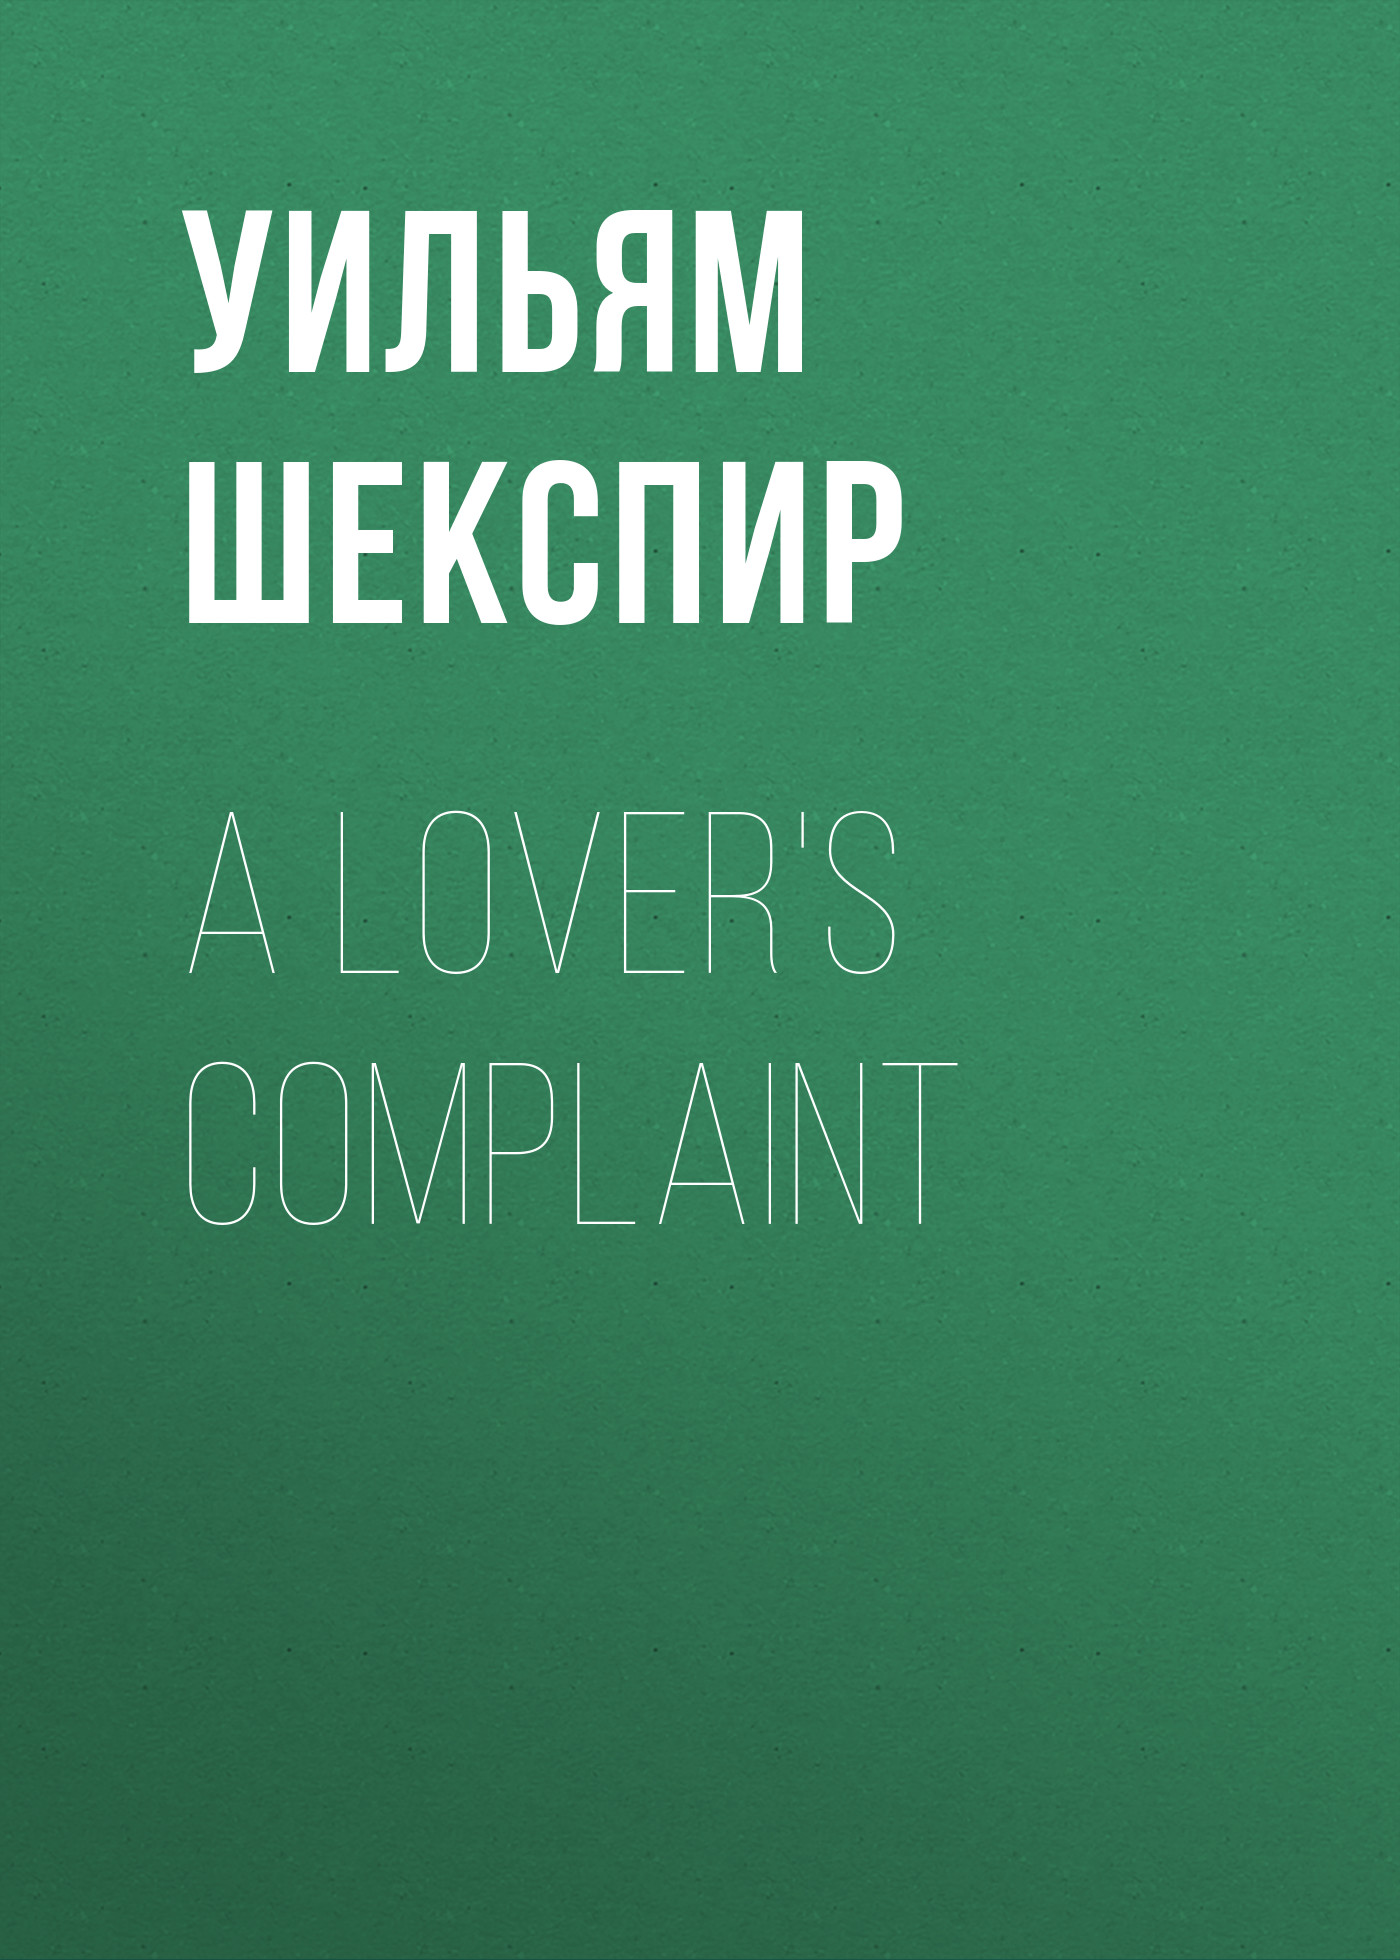 Книга A Lover's Complaint из серии , созданная Уильям Шекспир, может относится к жанру Европейская старинная литература, Зарубежная классика, Зарубежные стихи. Стоимость электронной книги A Lover's Complaint с идентификатором 25475431 составляет 0 руб.